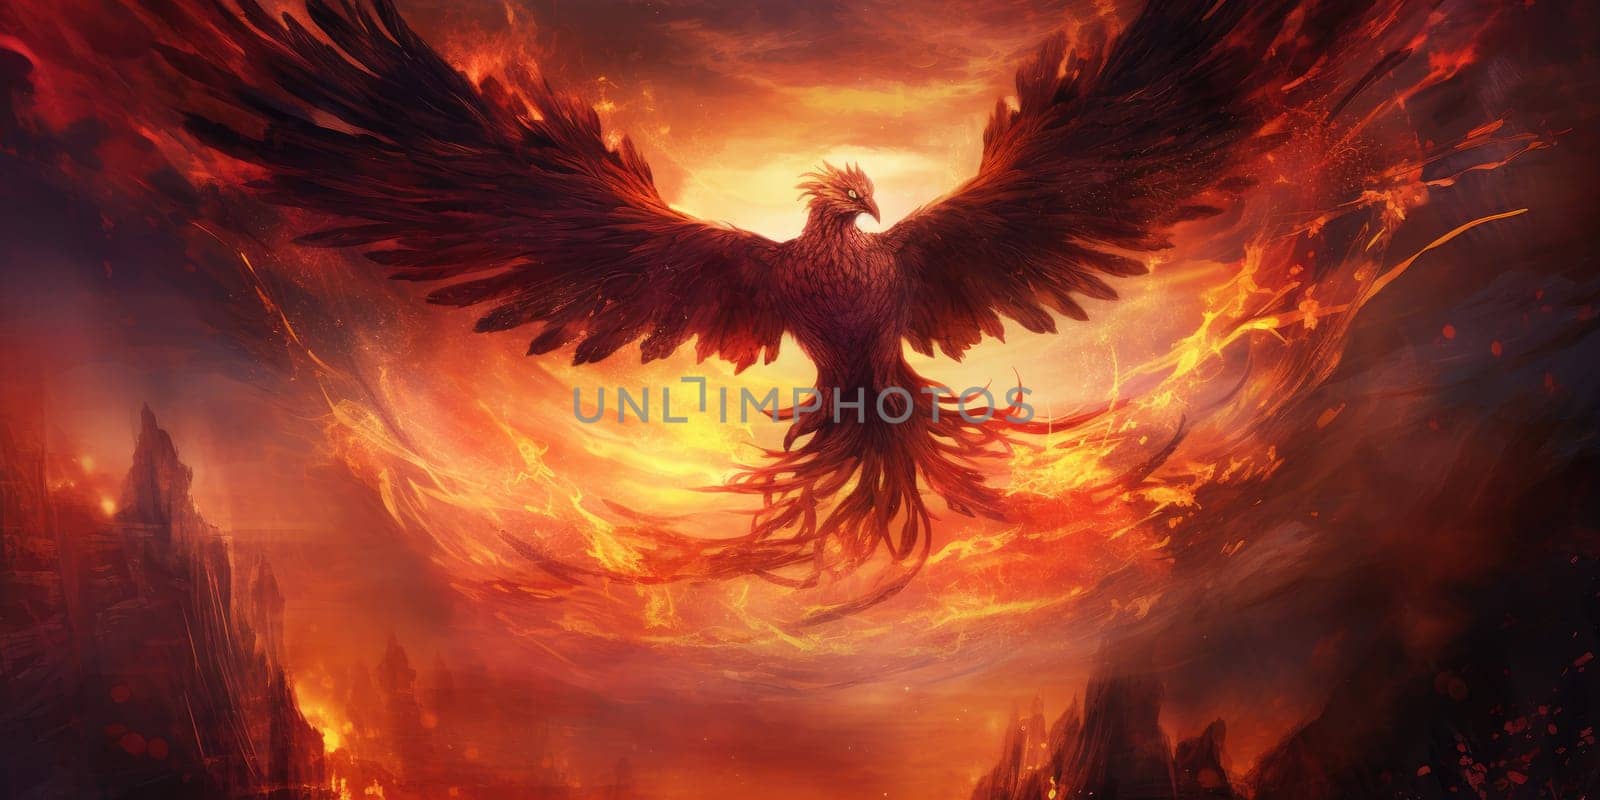 Mystic phoenix with burned, fiery core background by Kadula